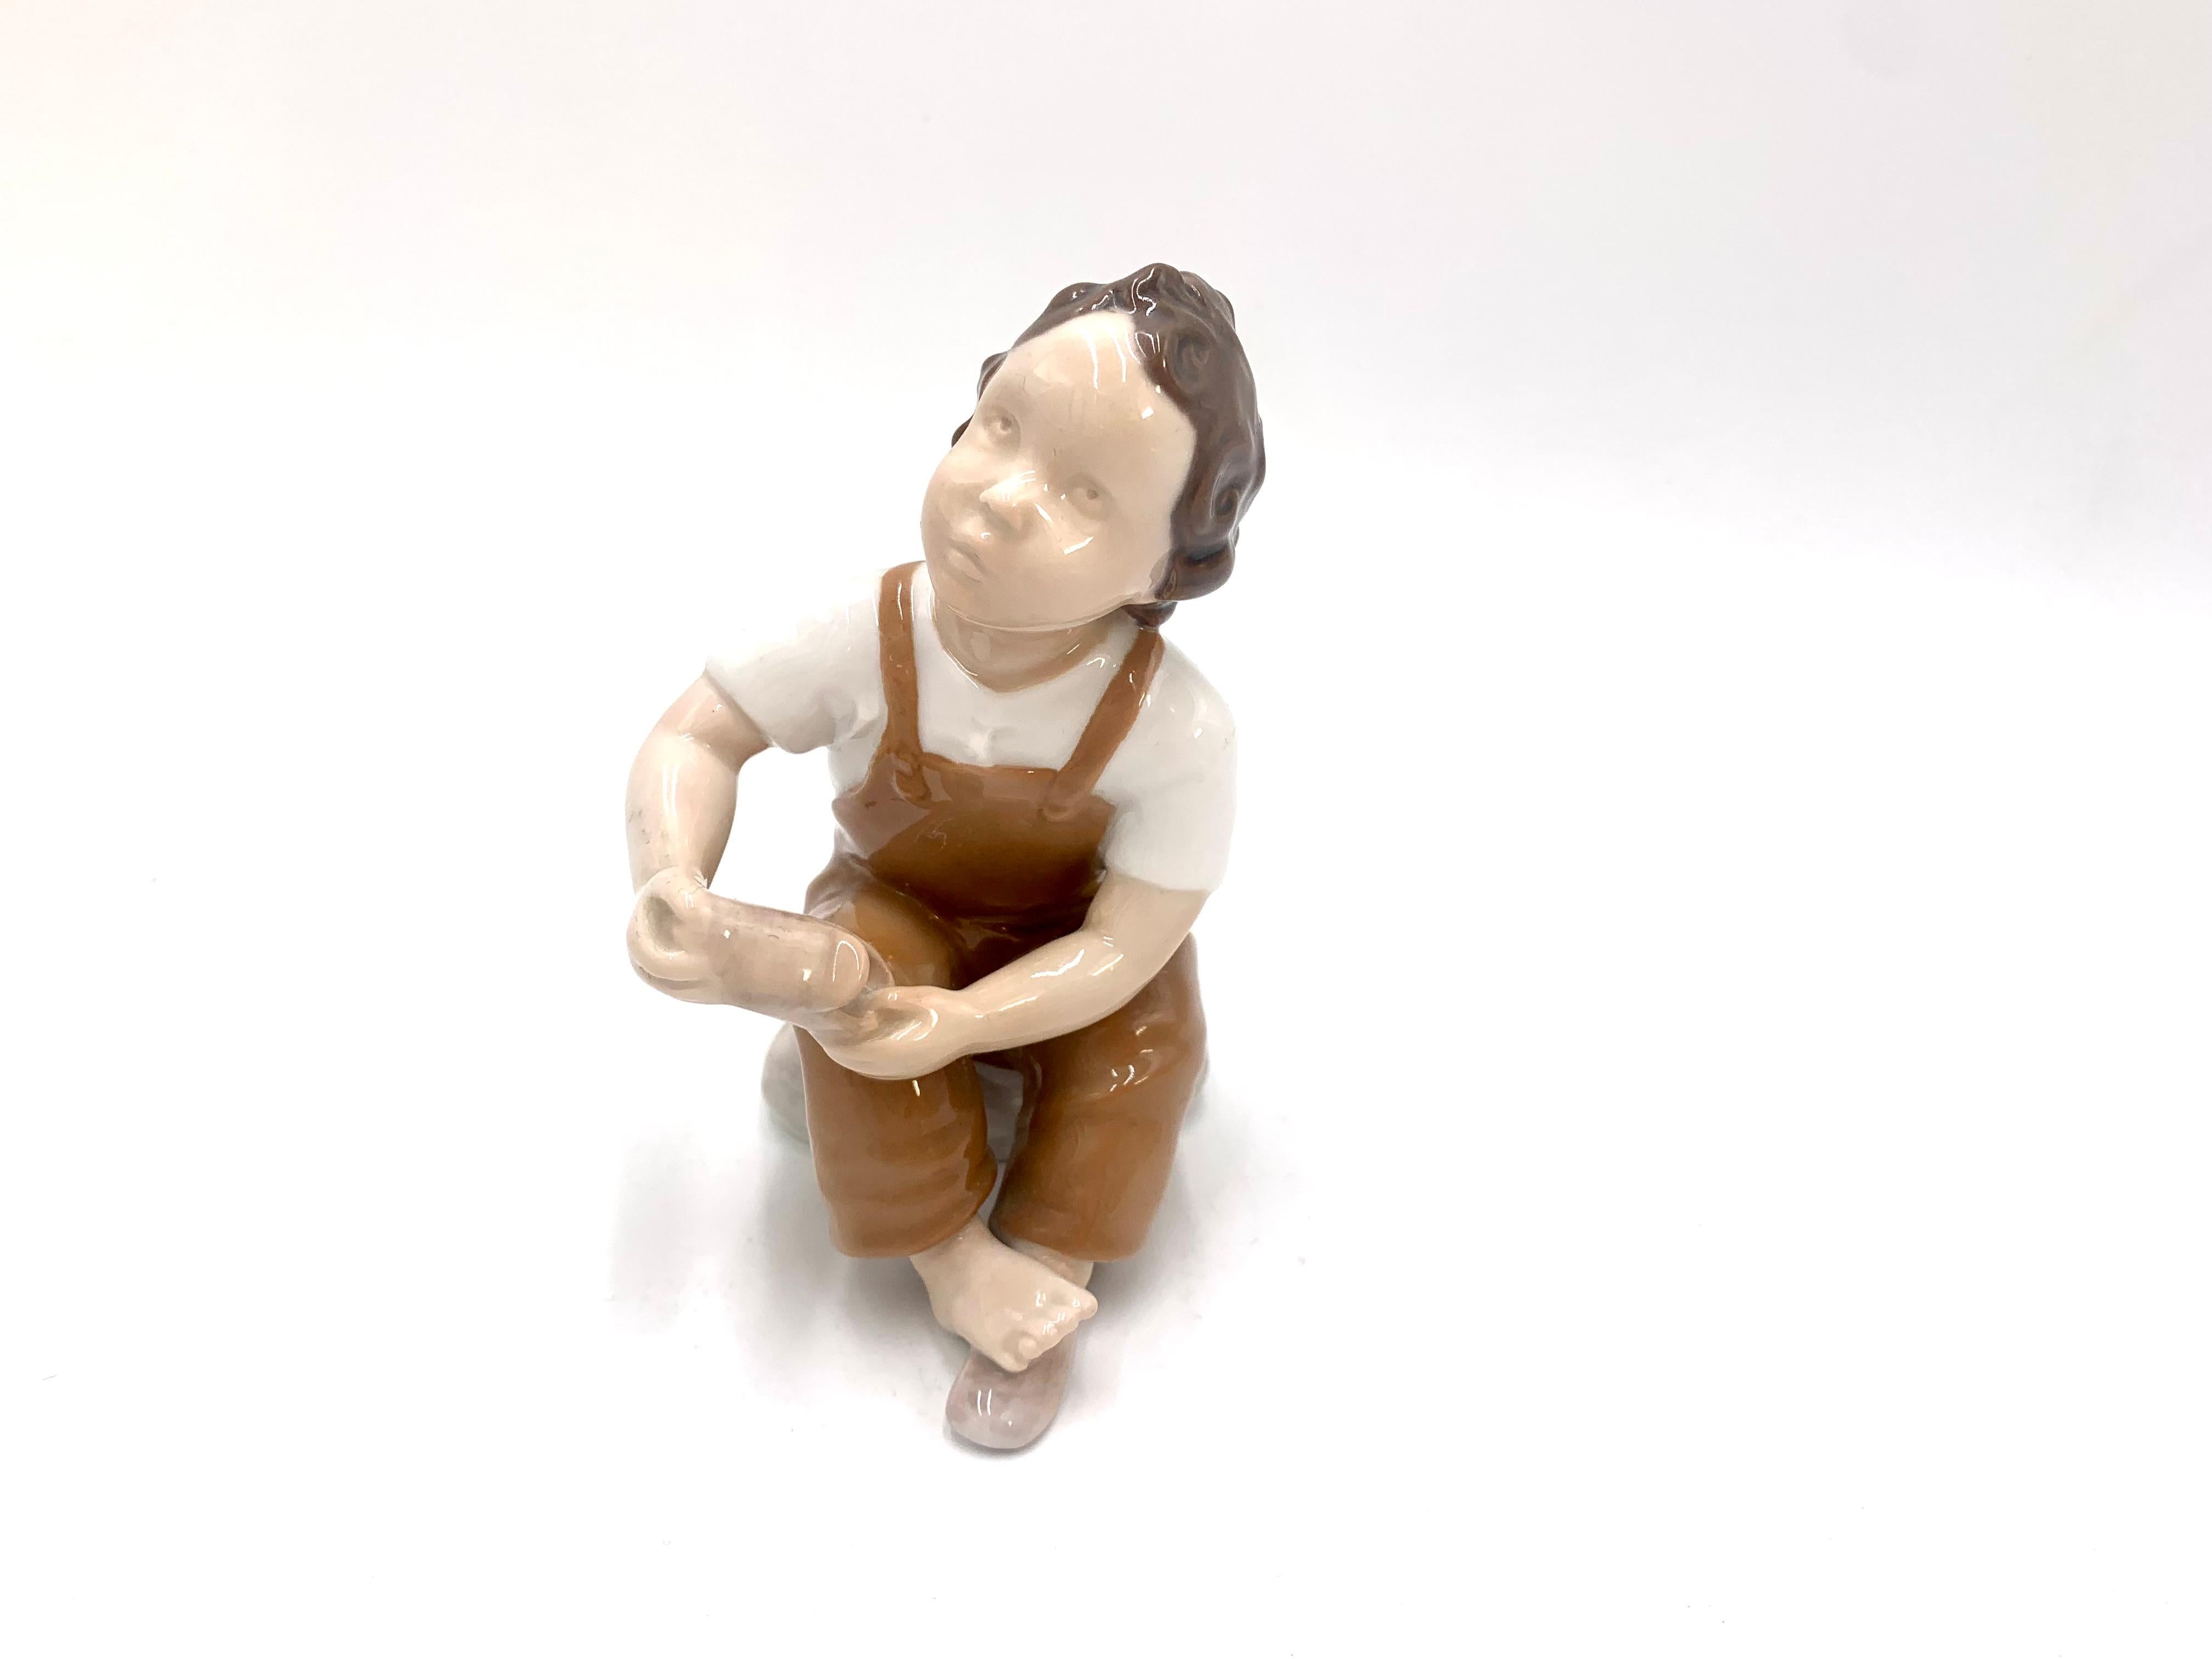 Figurine en porcelaine d'un garçon demandant de l'aide pour mettre sa chaussure

Fabriqué au Danemark par Bing & Grondahl

Produit en 1958-1962

Numéro de modèle : 2275

Très bon état, aucun dommage

Mesures : hauteur 13,5 cm, largeur 7